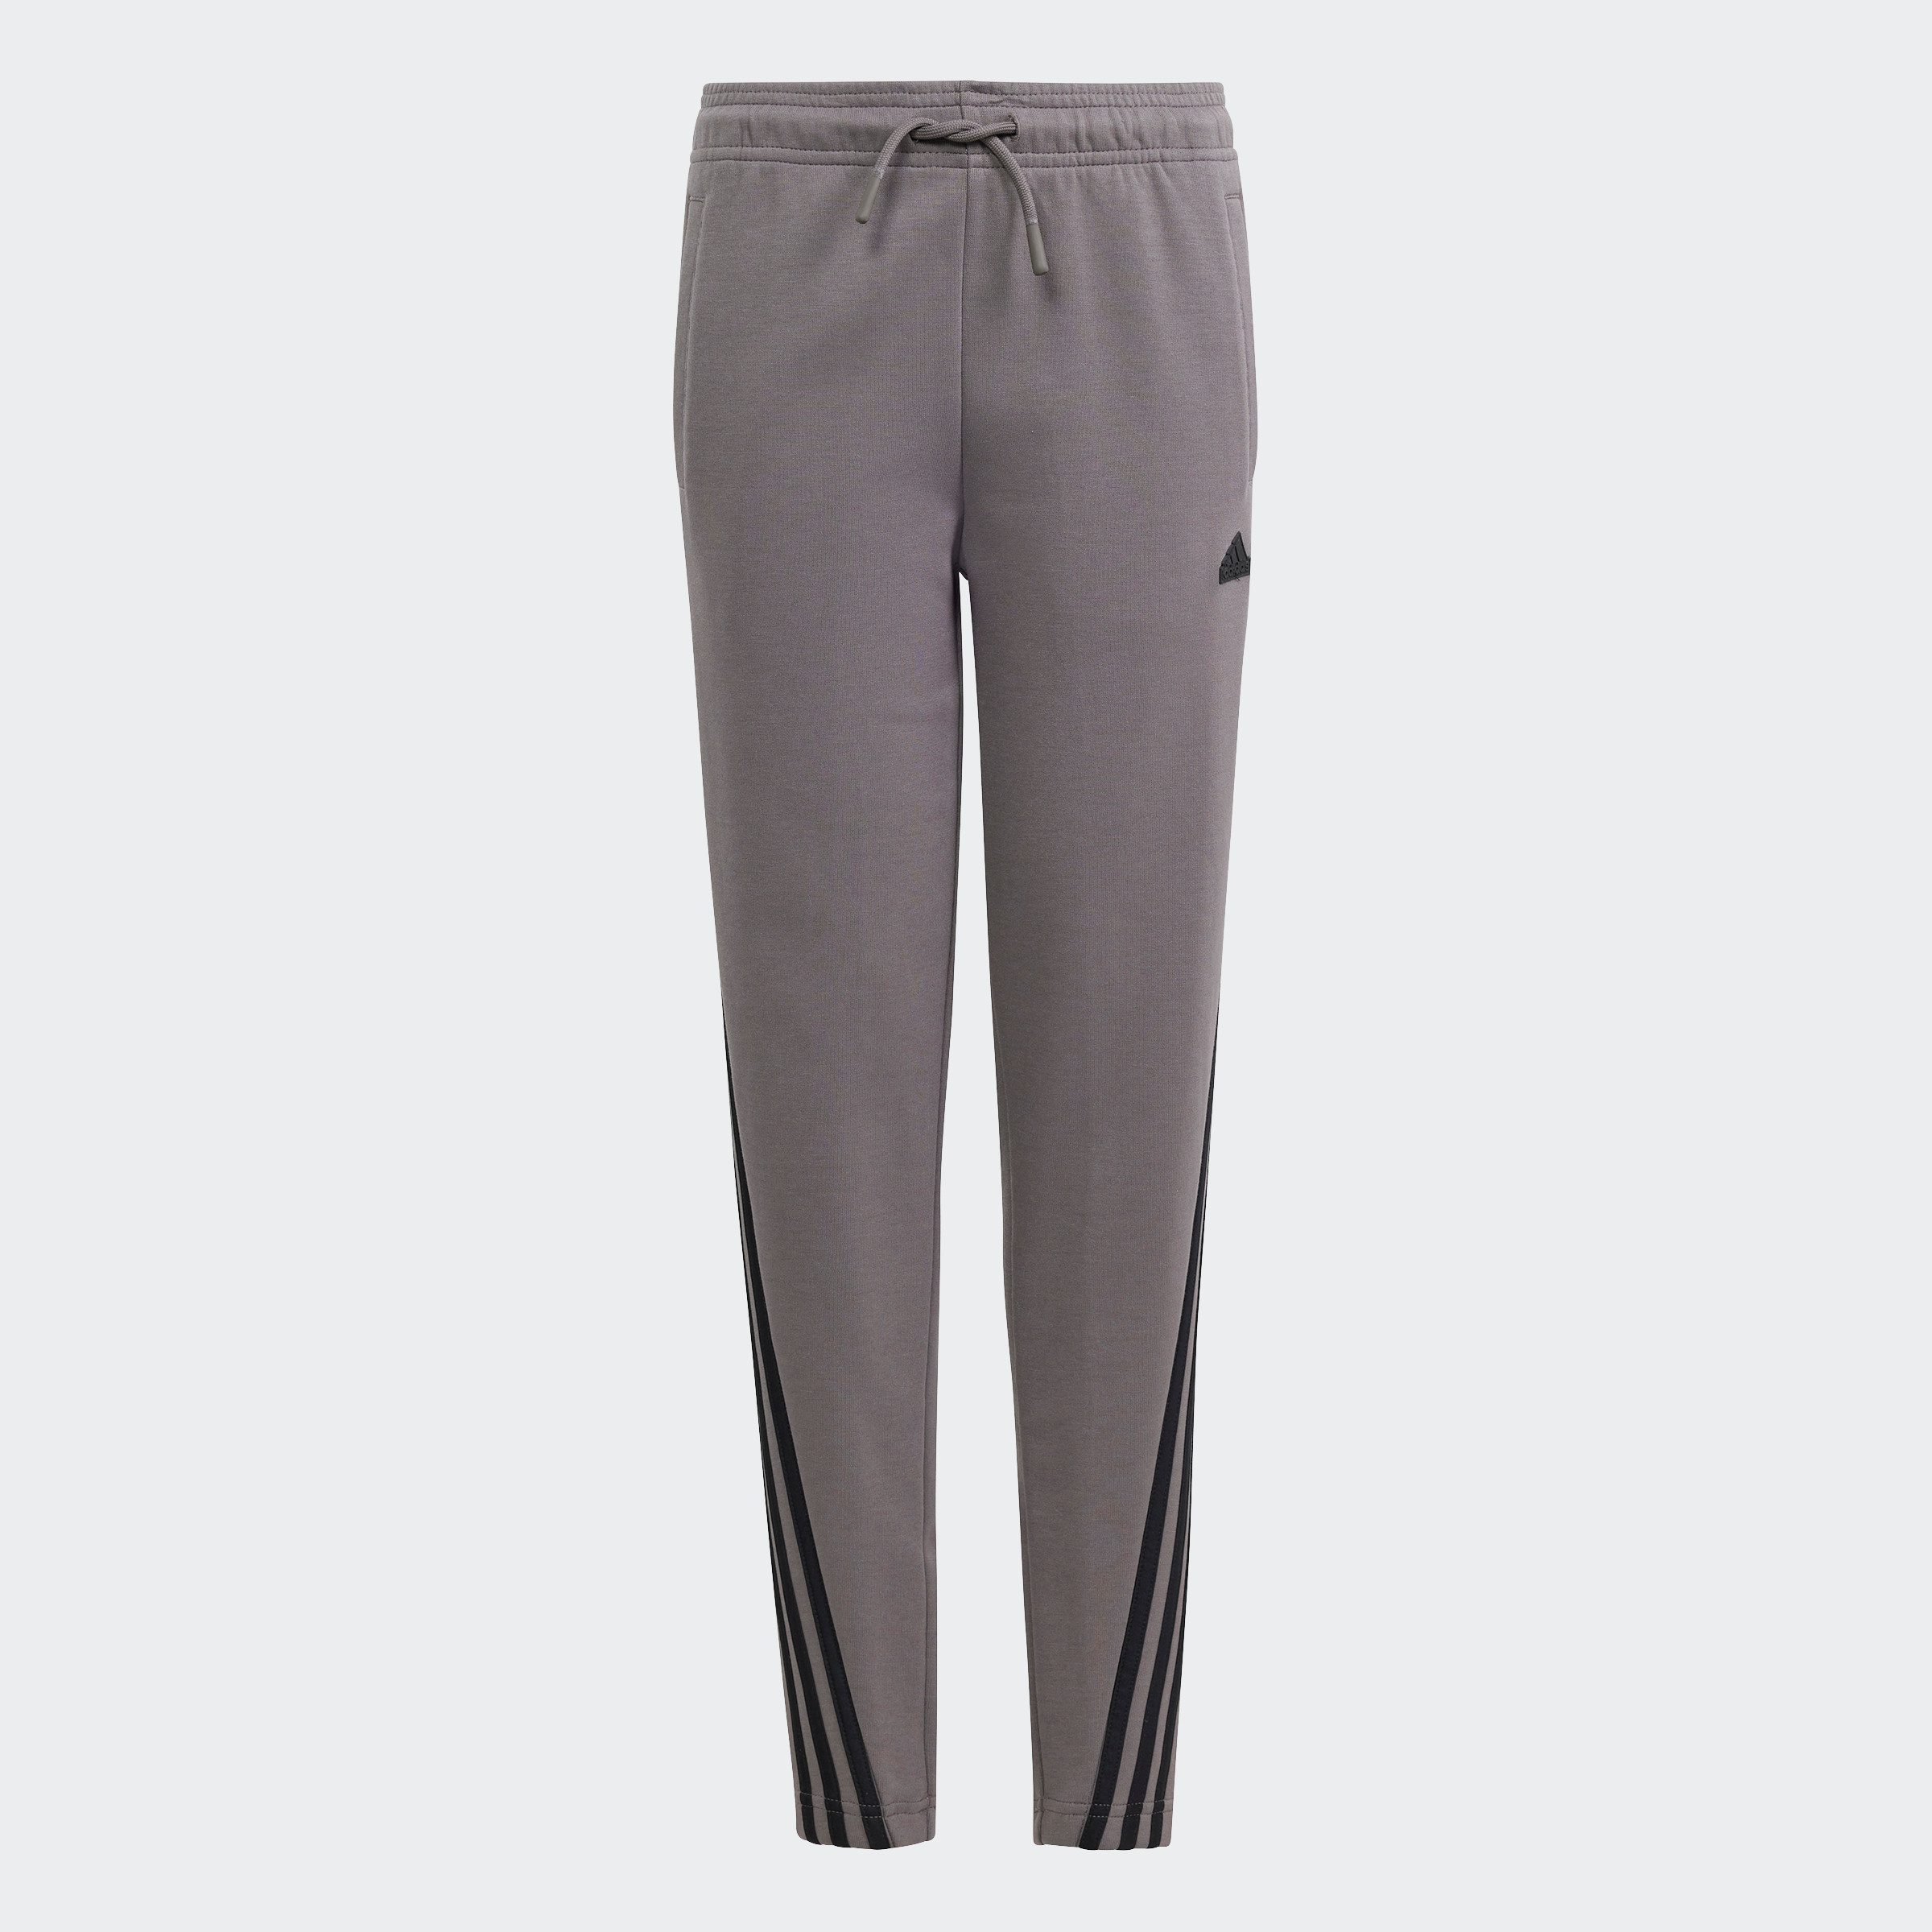 Adidas Sportswear joggingbroek grijs zwart Katoen Effen 128